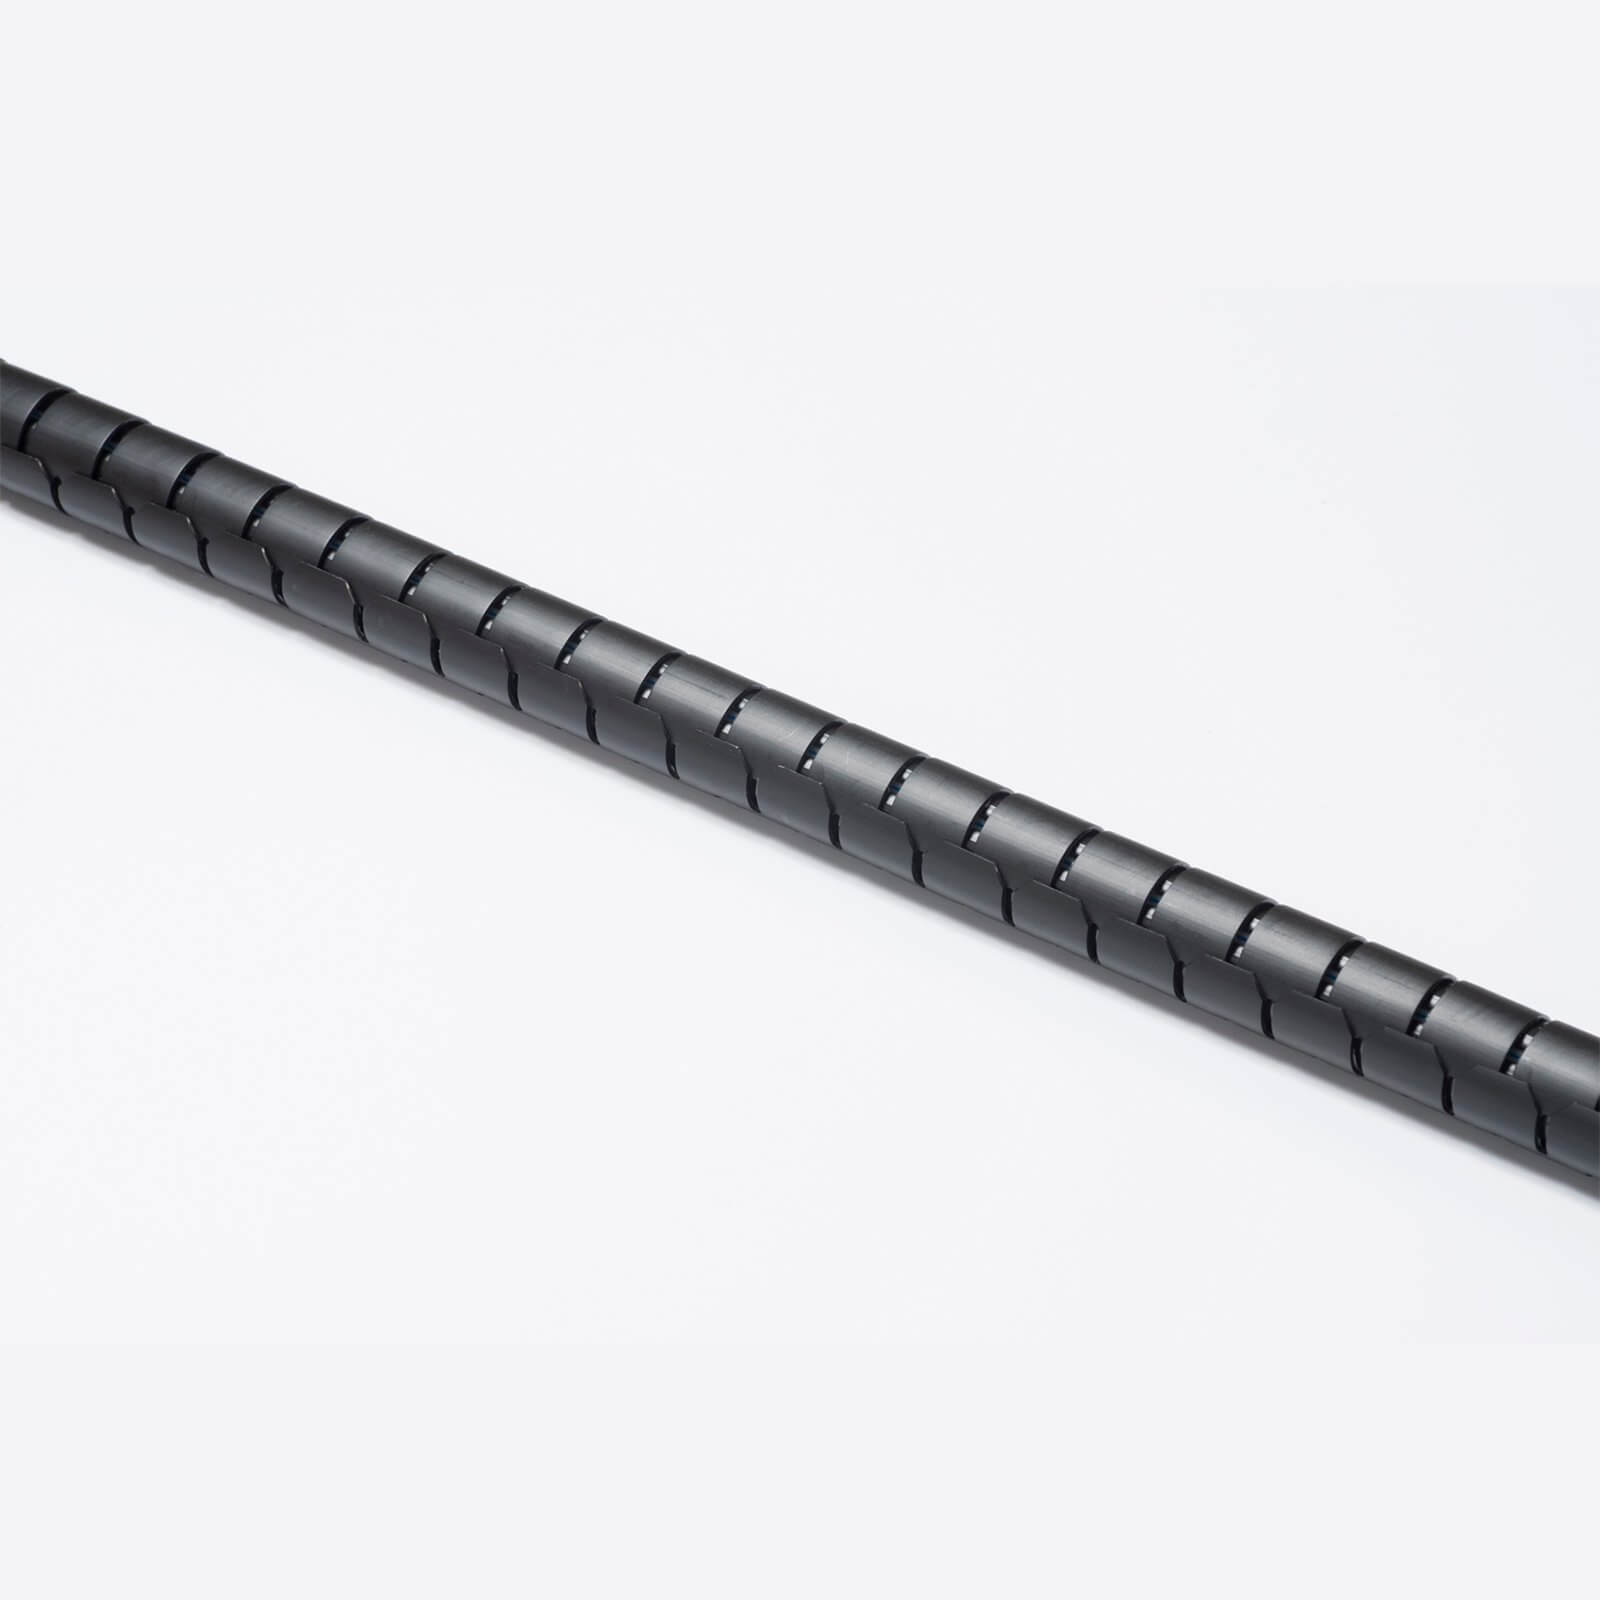 D-Line Cable Zipper - 2.5m Length 25mm diameter, Black